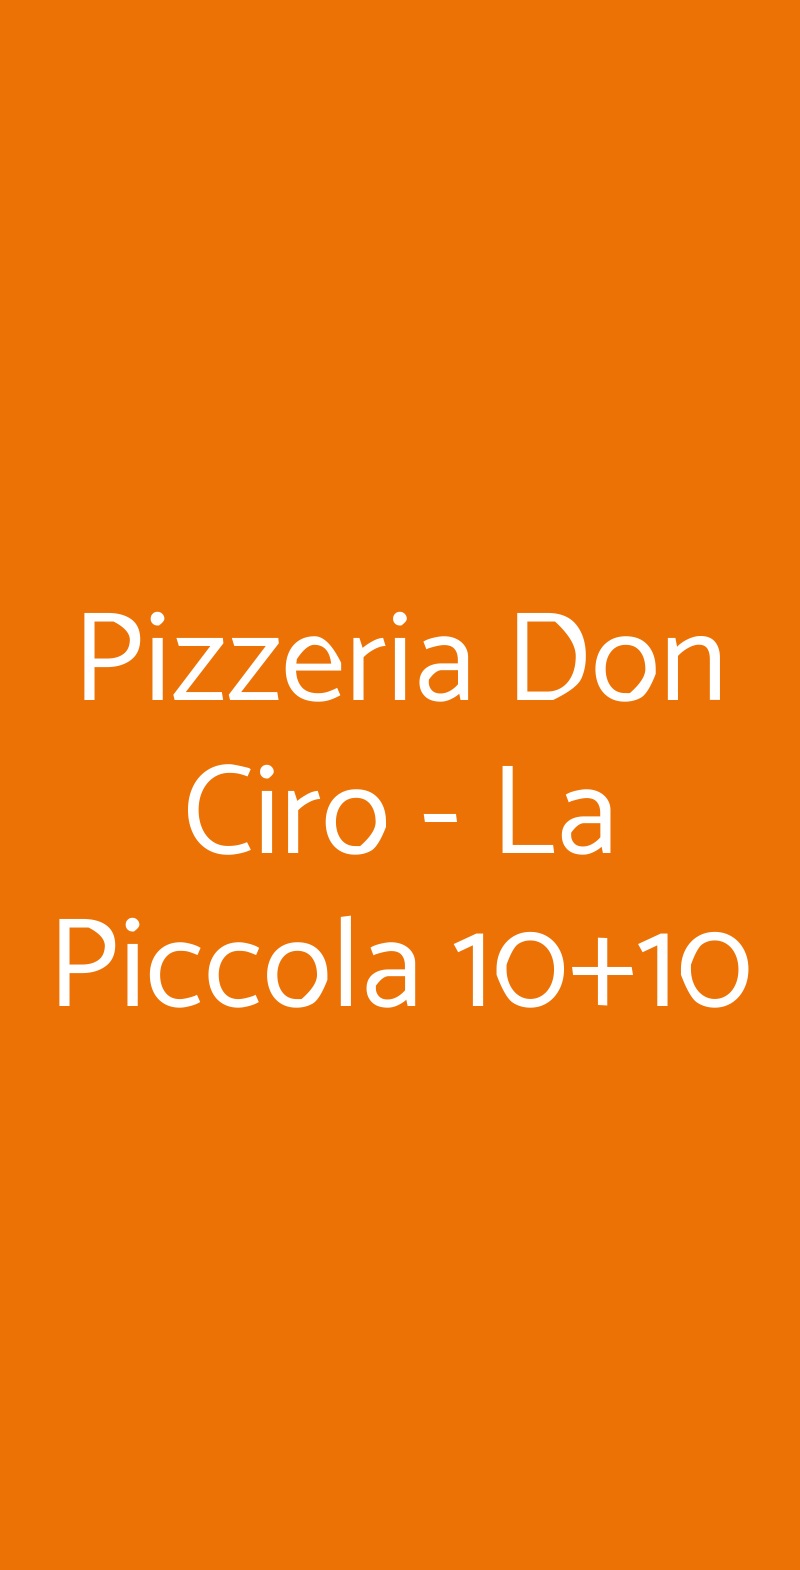 Pizzeria Don Ciro - La Piccola 10+10 Livorno menù 1 pagina